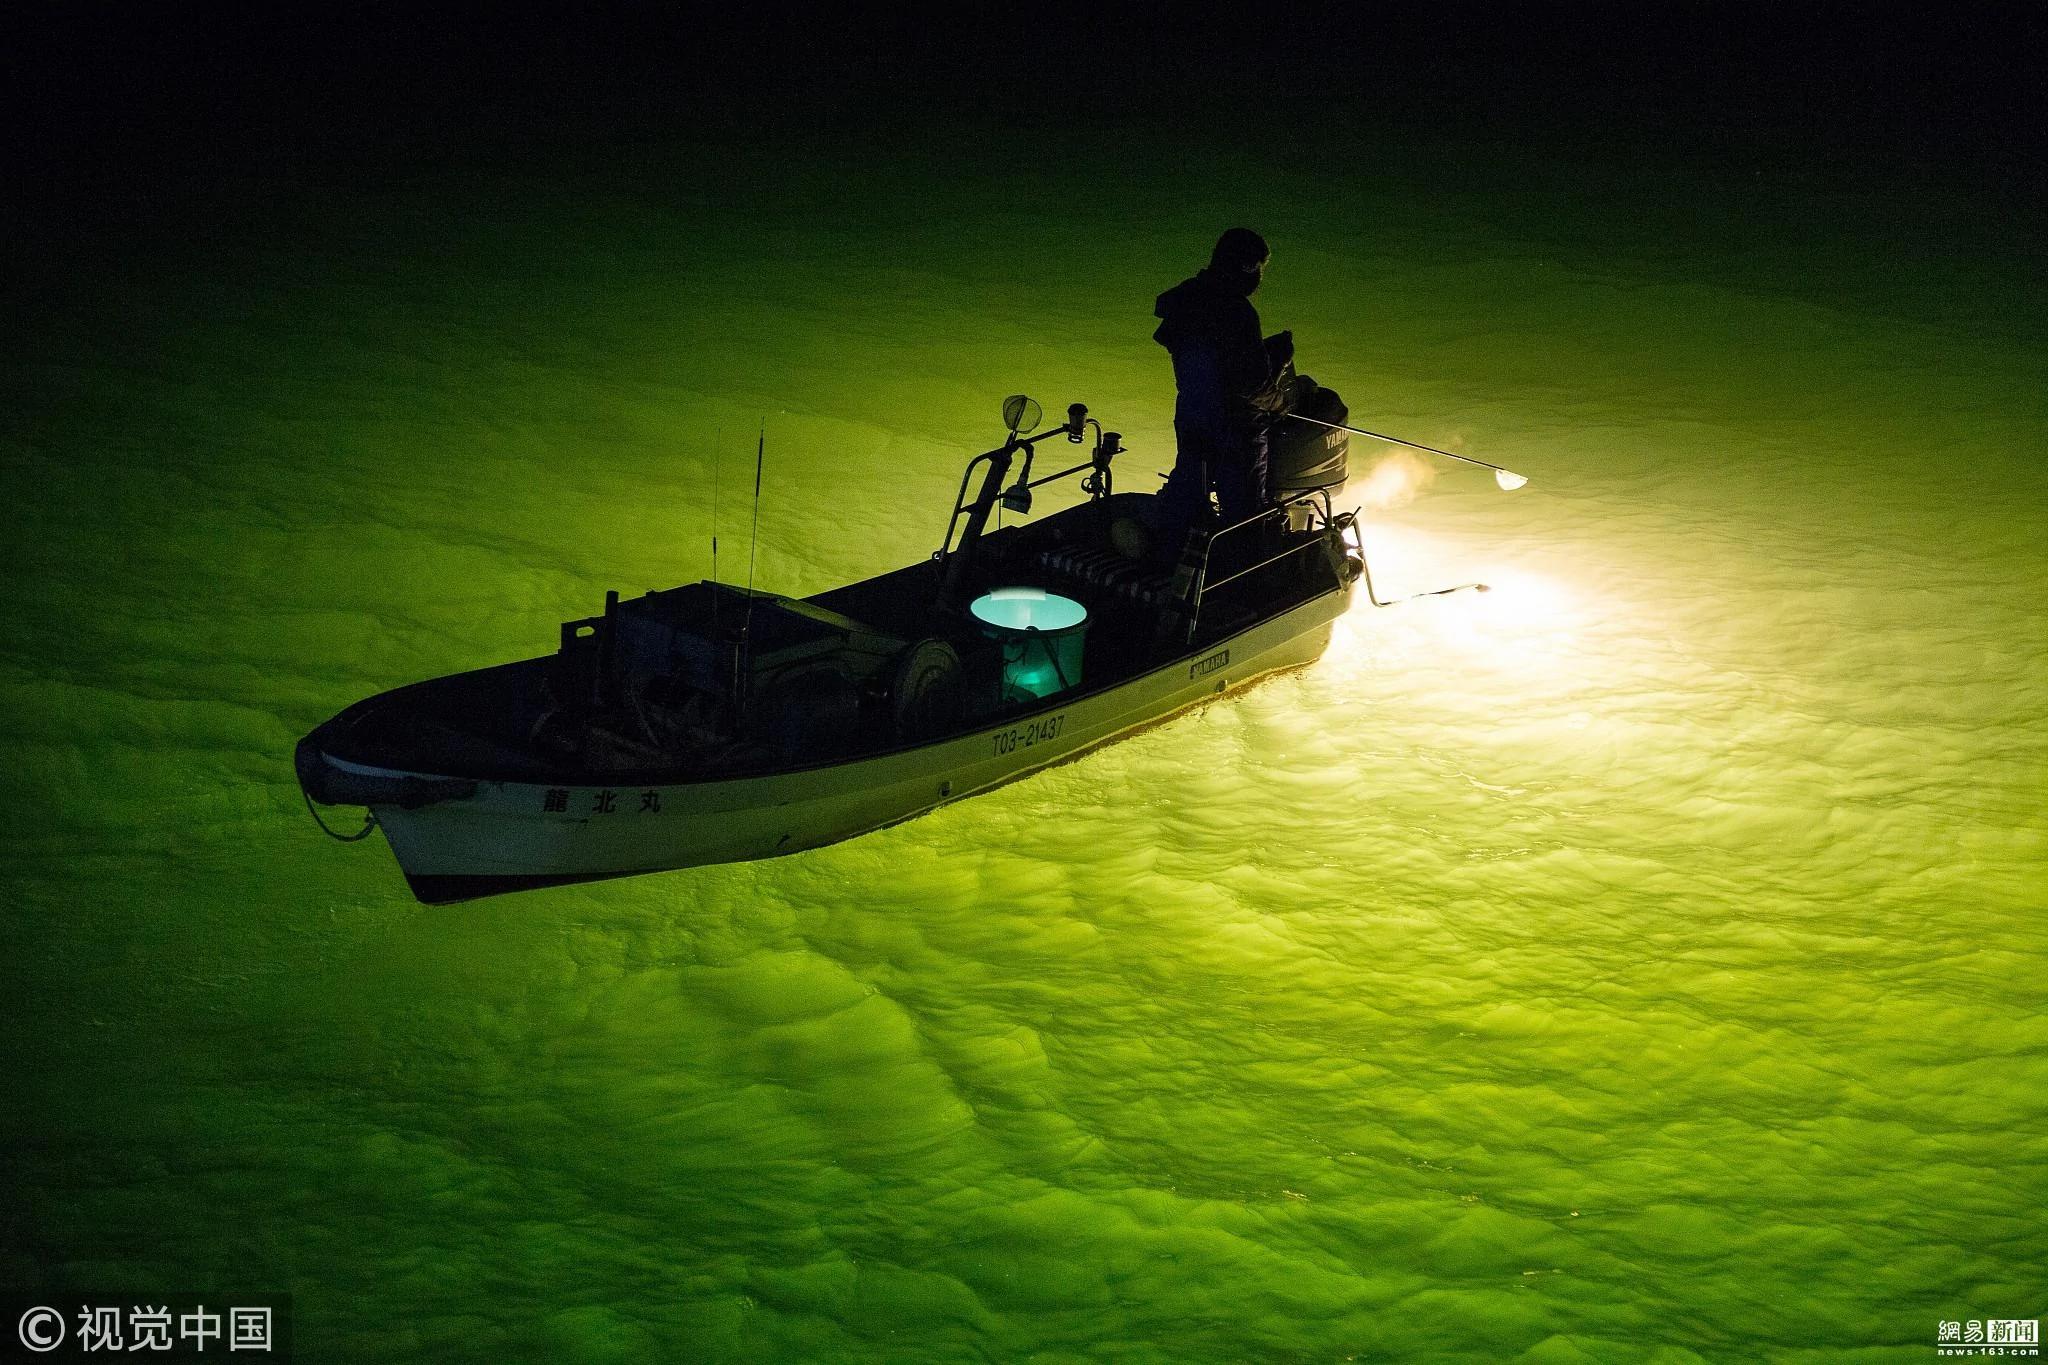 日本漁民河面點燈夜捕鰻魚 場面如夢如幻